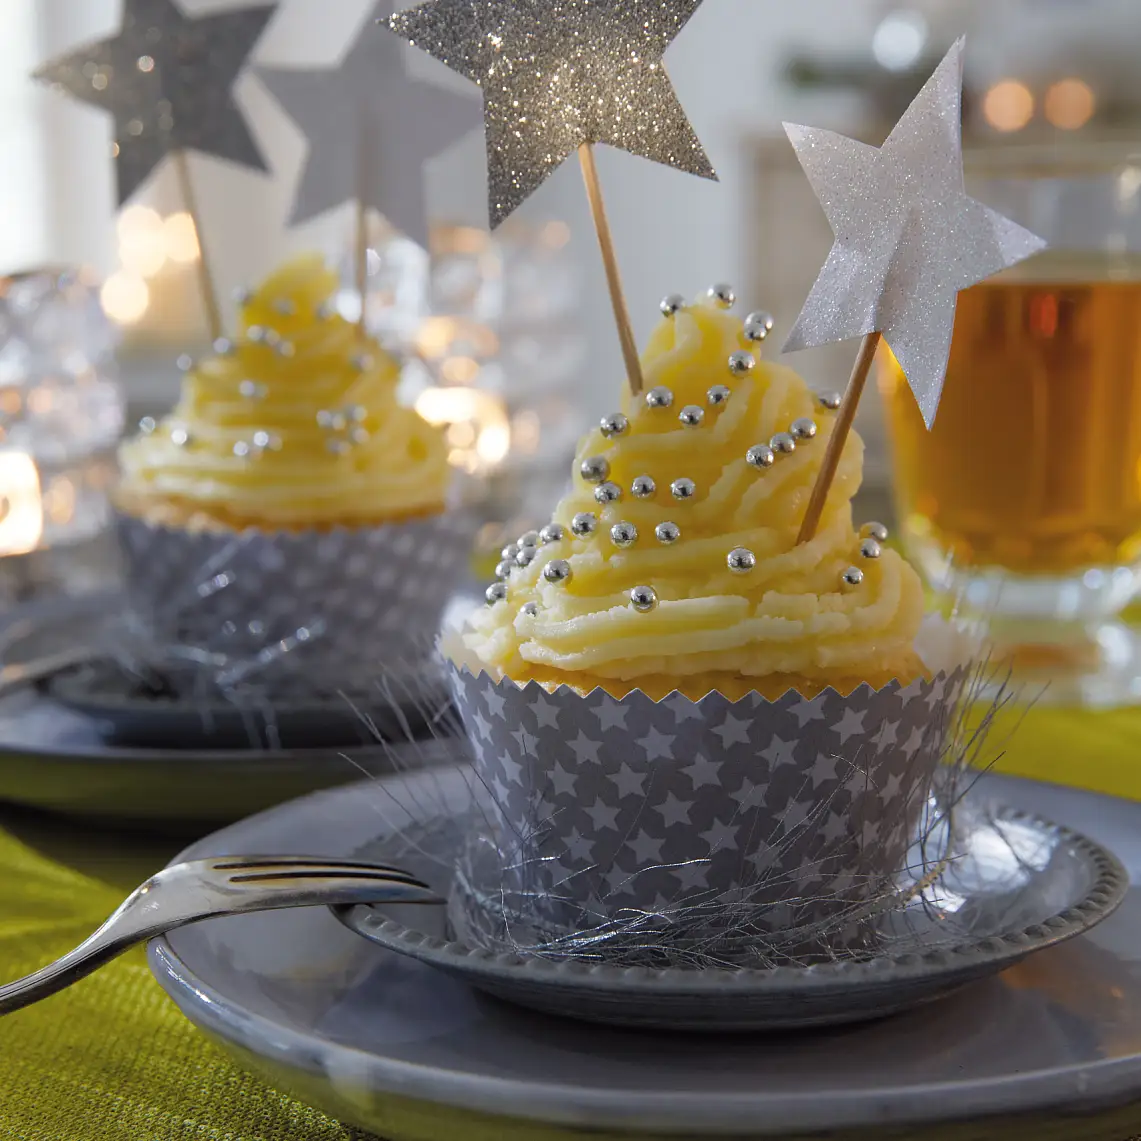 Die Cupcakes tragen ein festlich gemustertes Kleid. Passende Accessoires dazu: Deko-Sticks mit glitzernden Sternen.